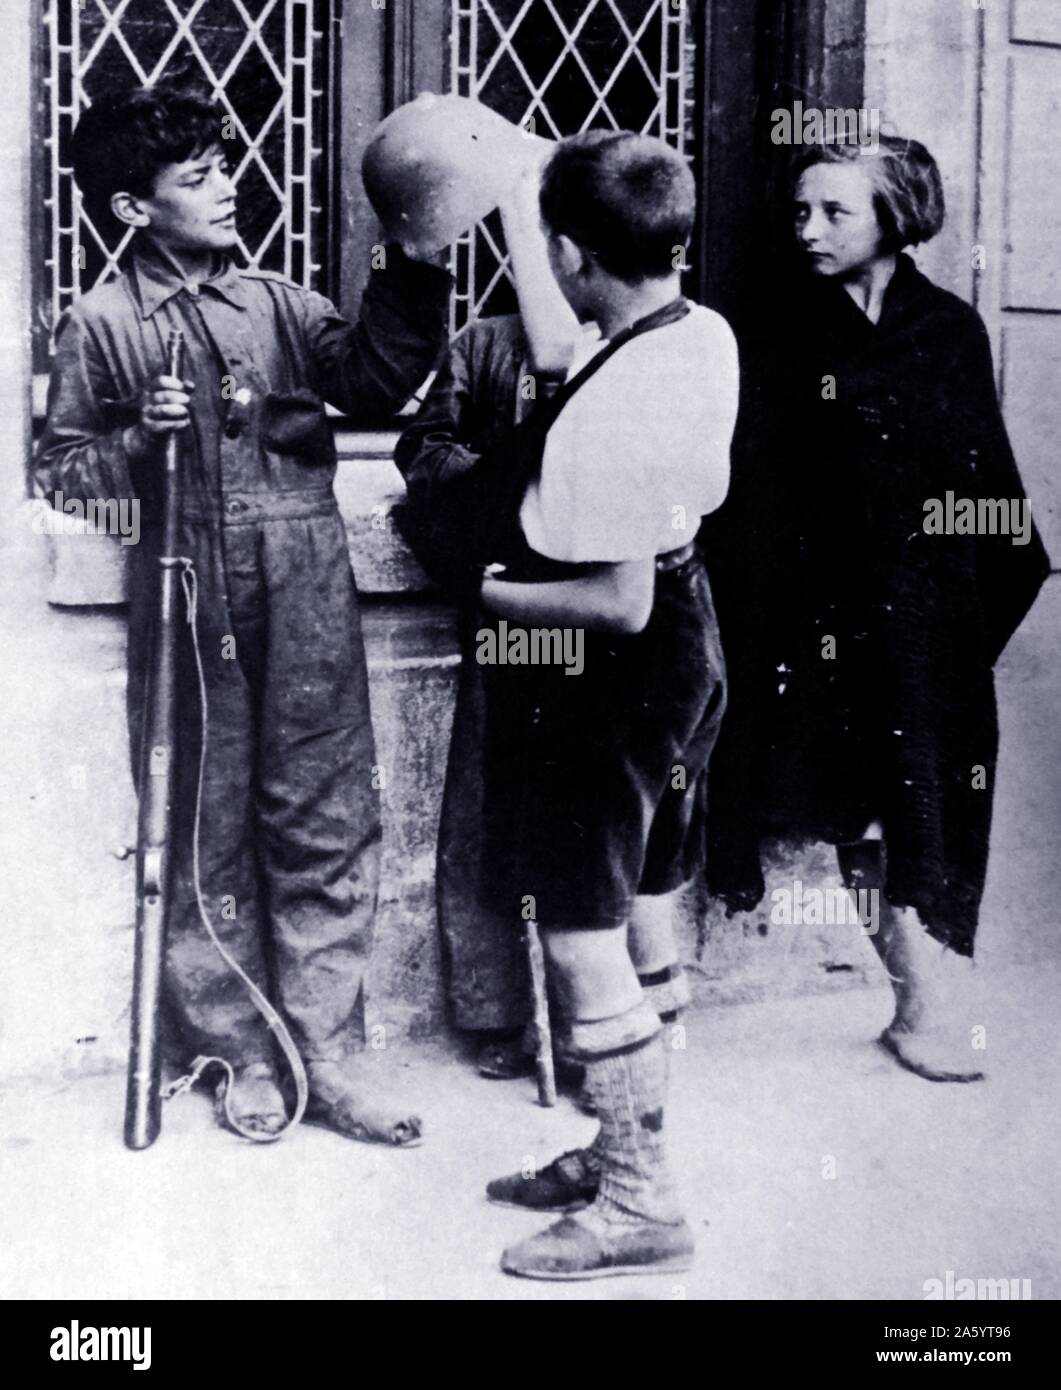 Drei jungen und ein Mädchen mit Waffen im Frühjahr 1937 während des spanischen Bürgerkriegs Stockfoto